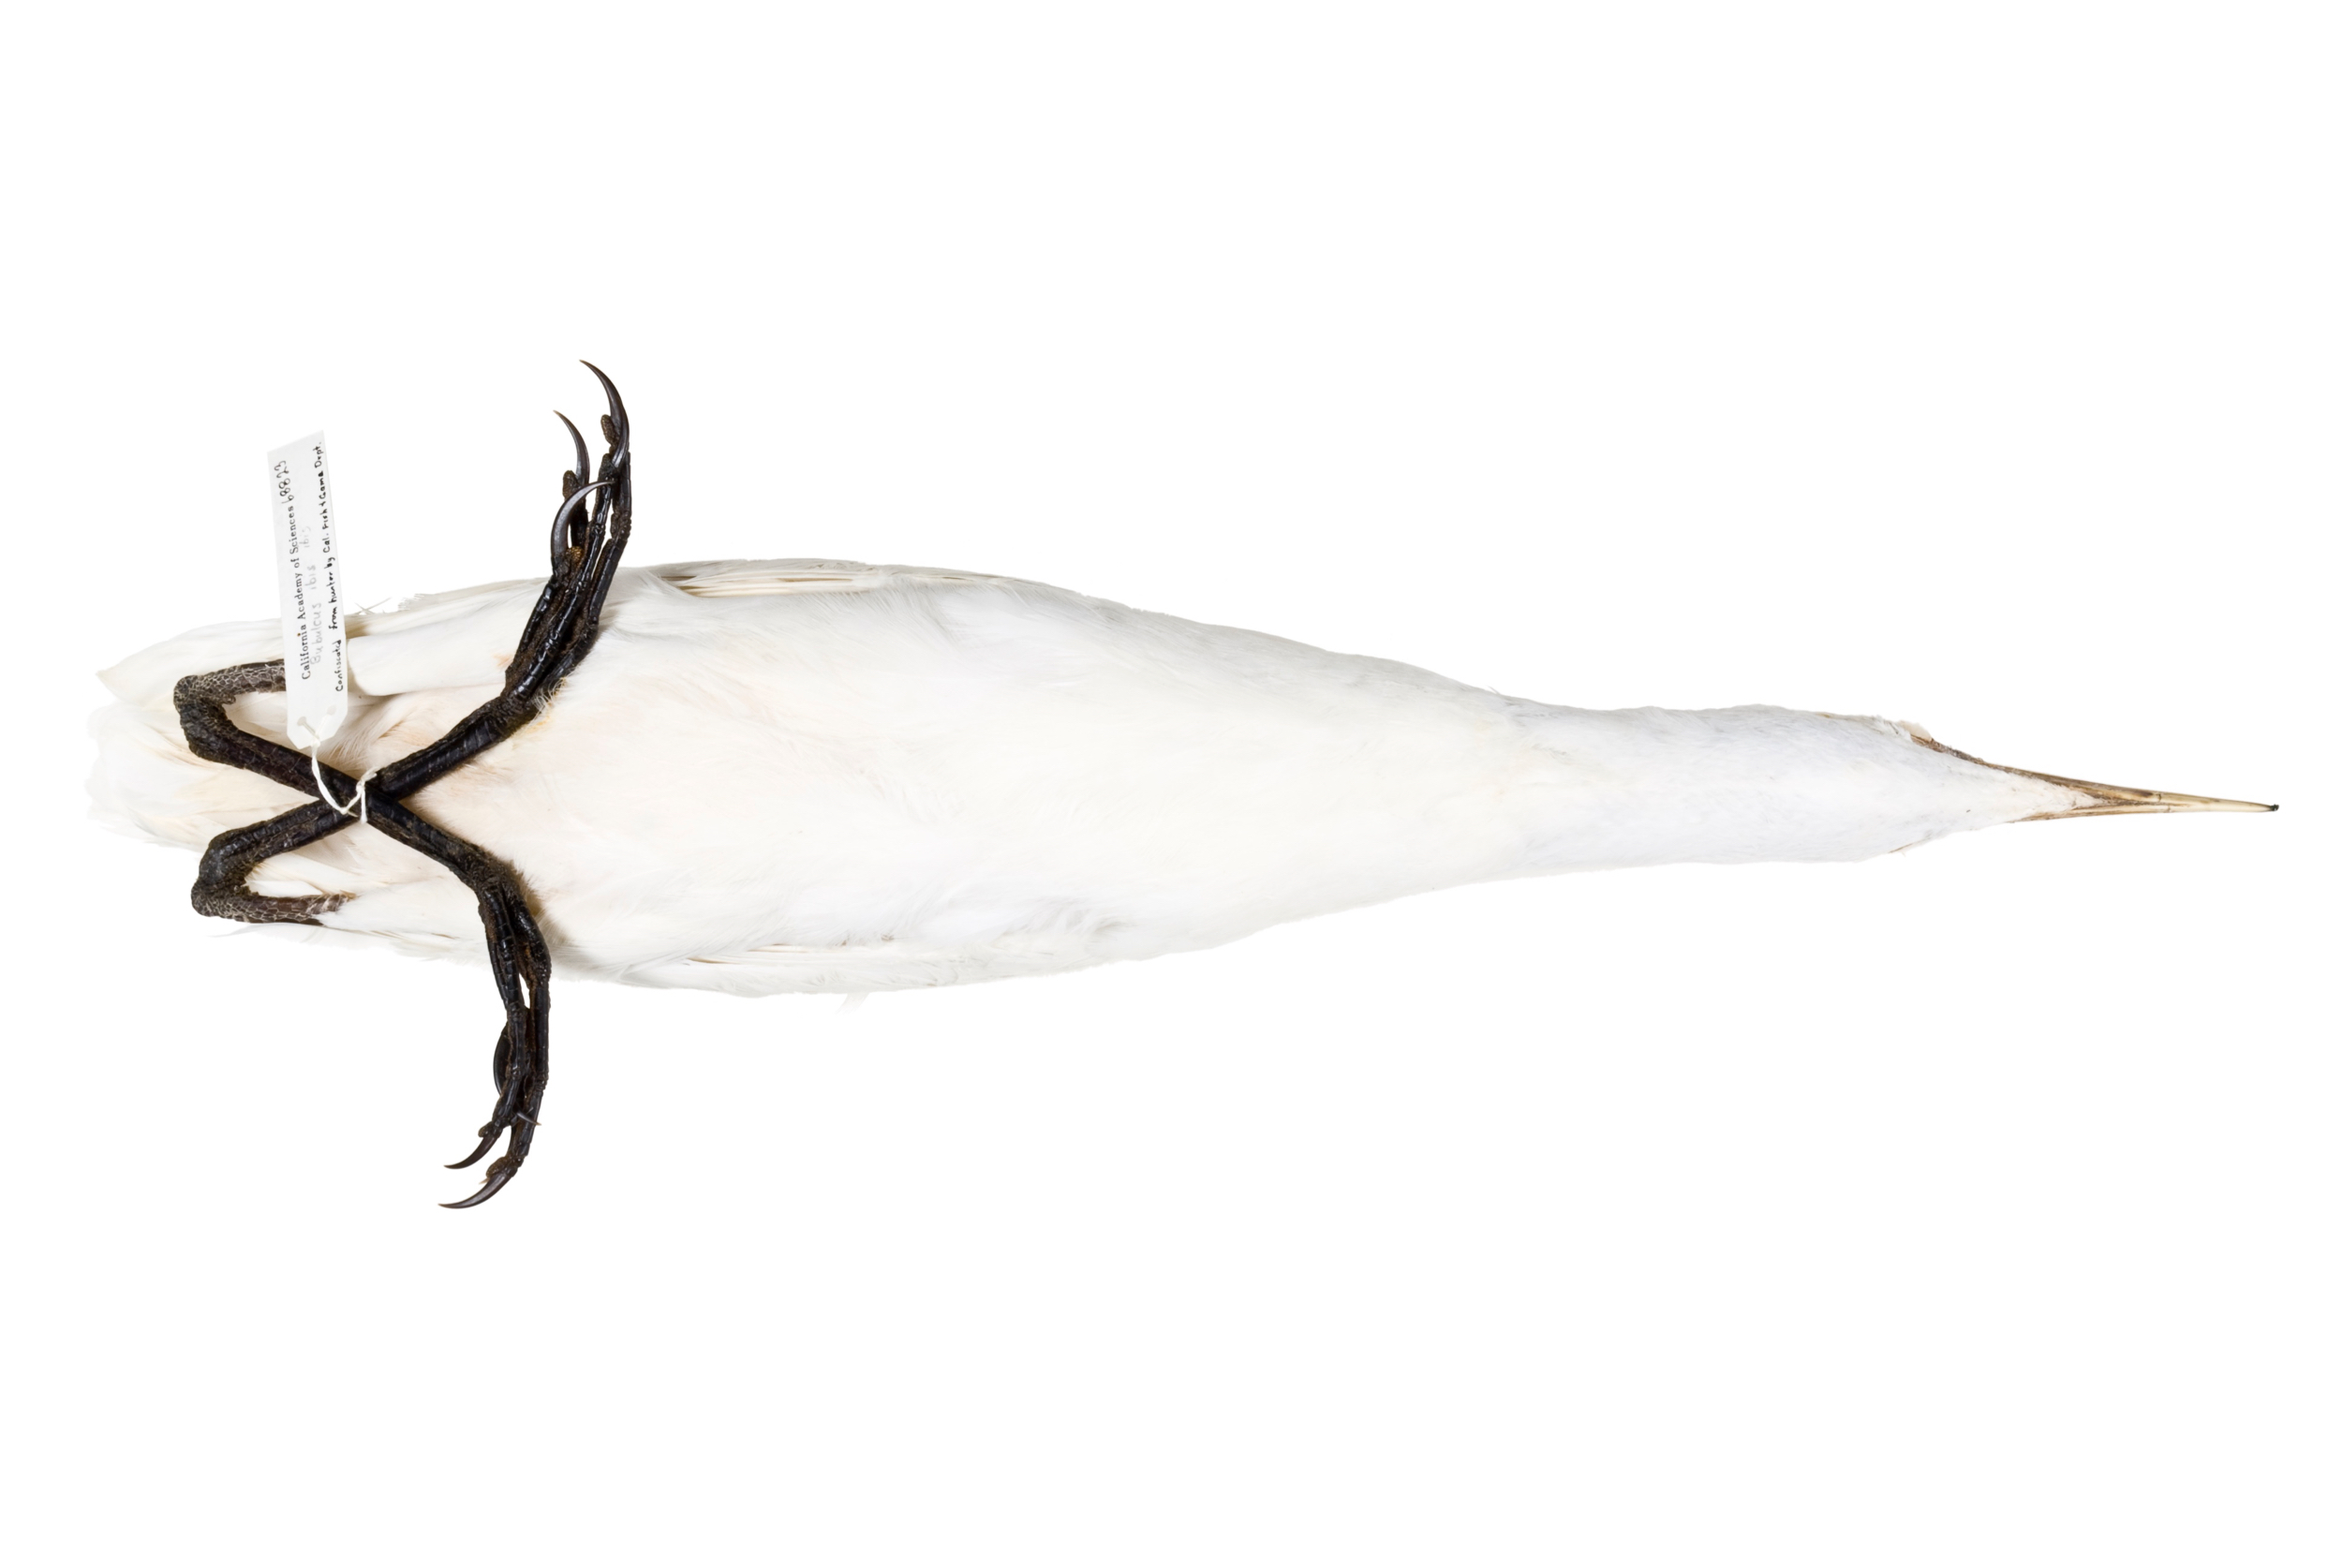   snowy egret 1   8" x 12" or 12" x 18"  2007    